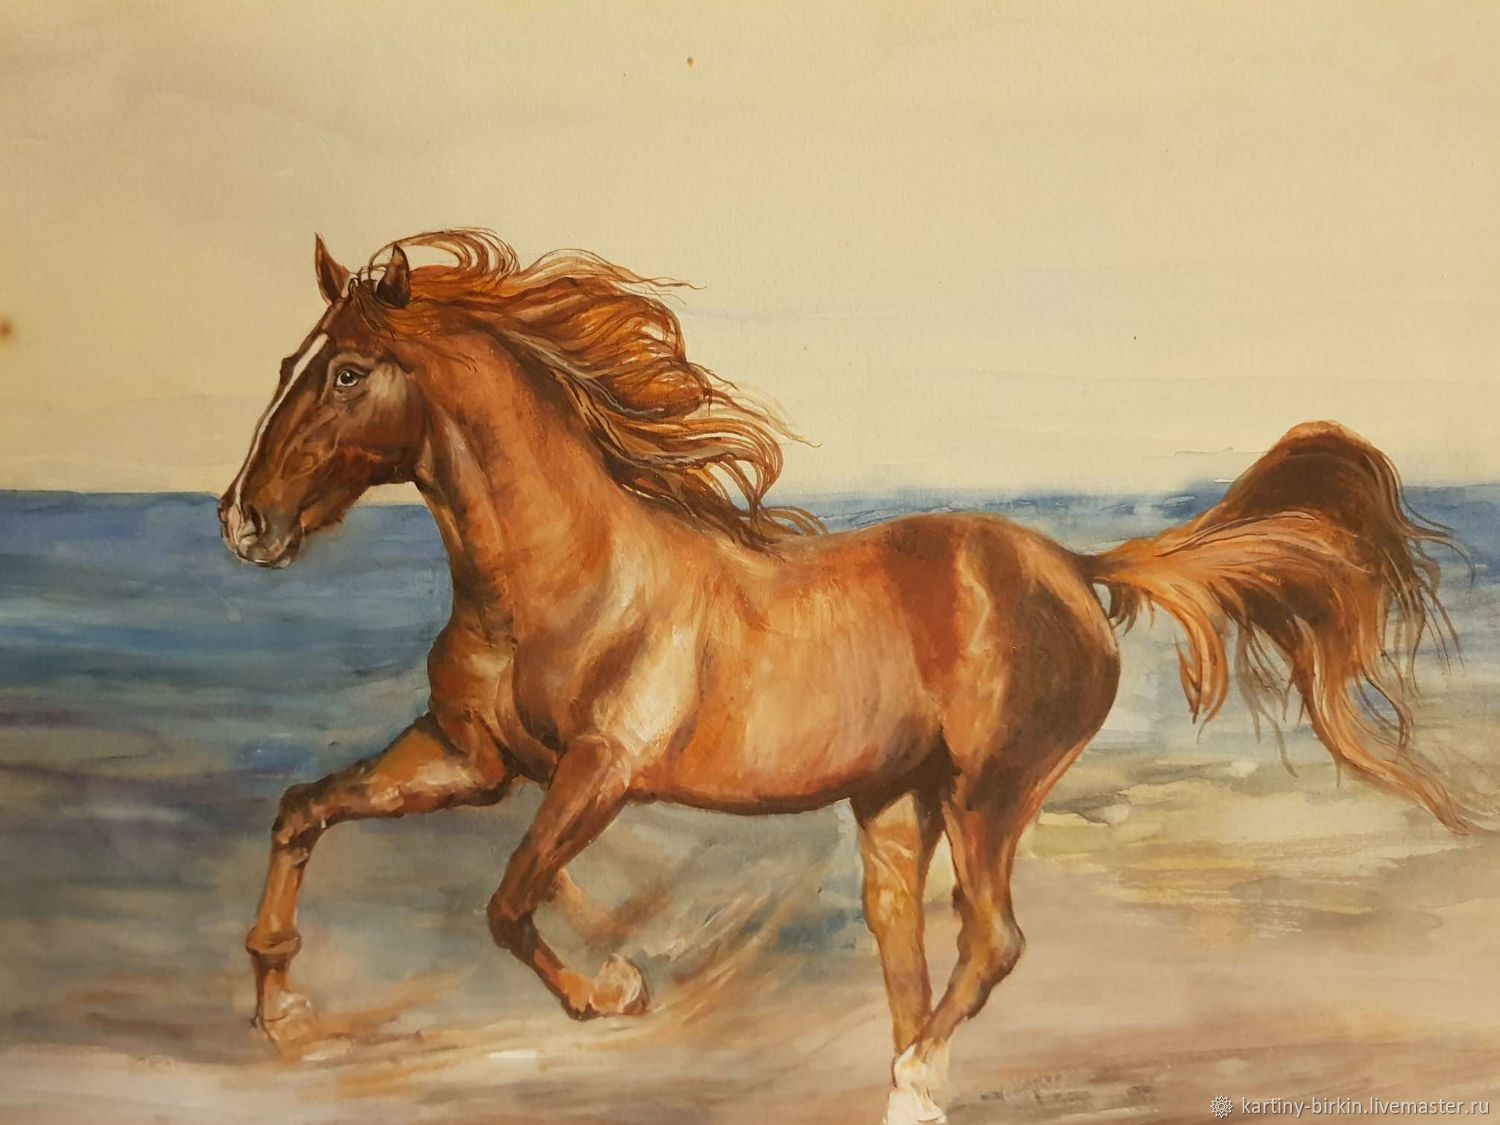 Скачущие лошади в живописи